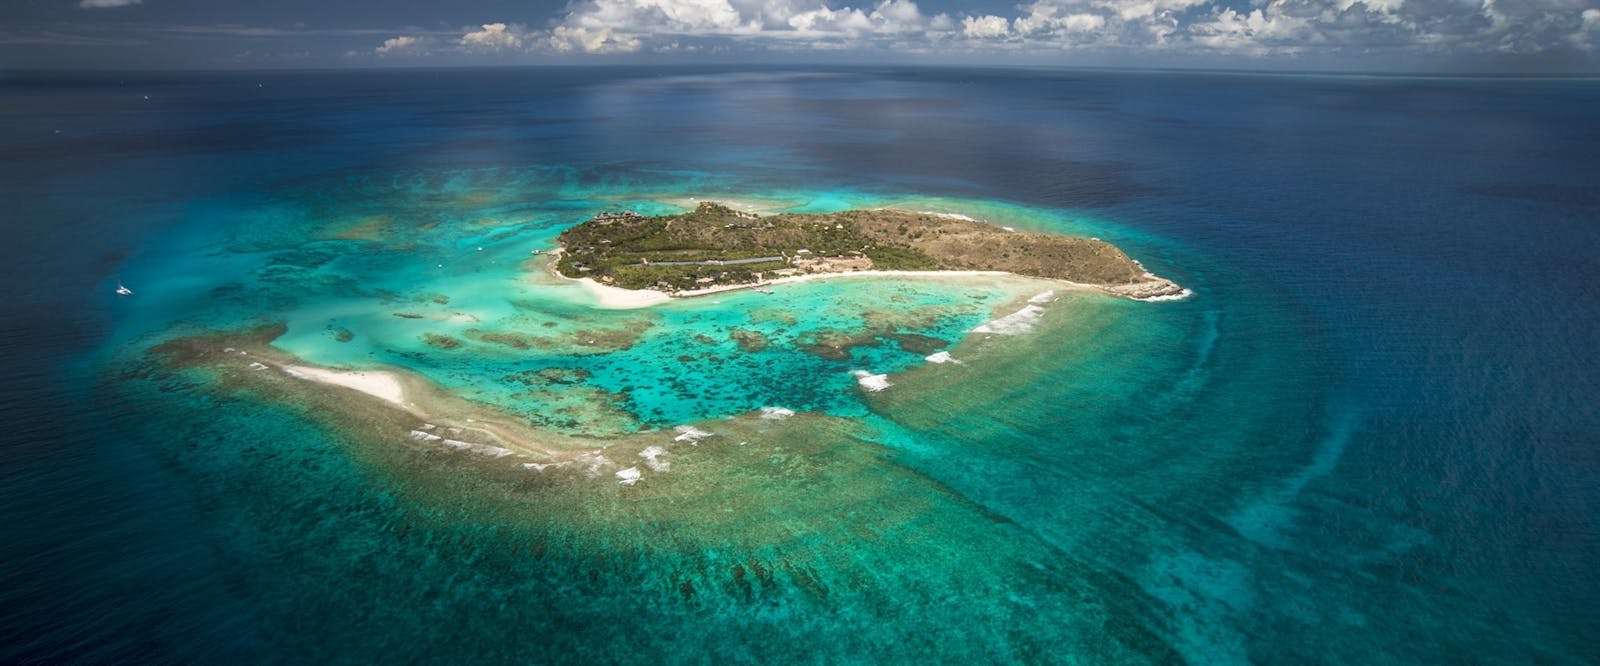 Aerial view of Necker Island, British Virgin Islands